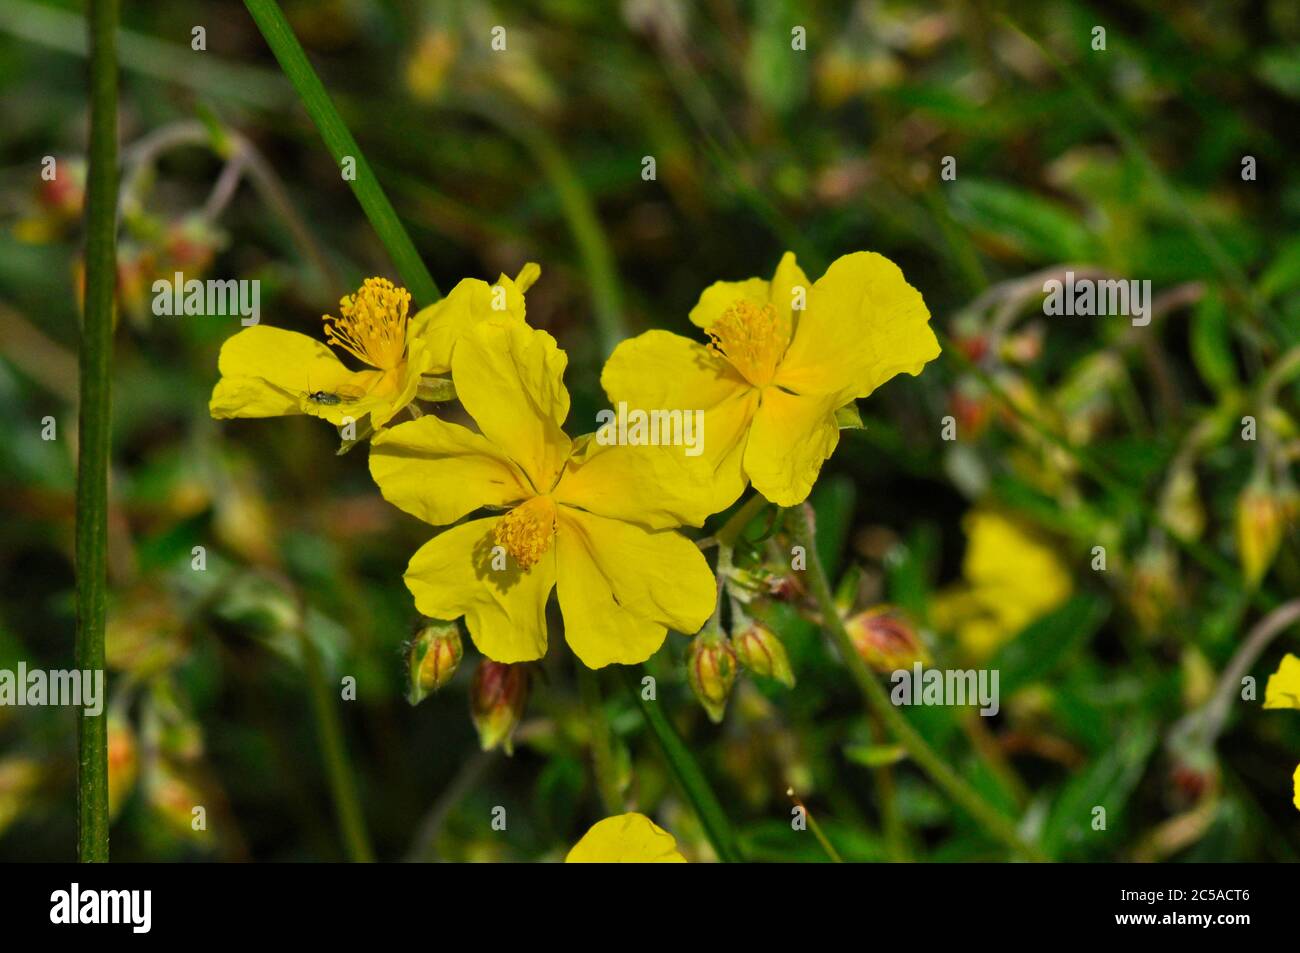 Rockrose común 'Helianthemum numularium', flor amarilla común en tiza y piedra caliza, floración en verano en Inglaterra y Gales.Wiltshire.UK Foto de stock